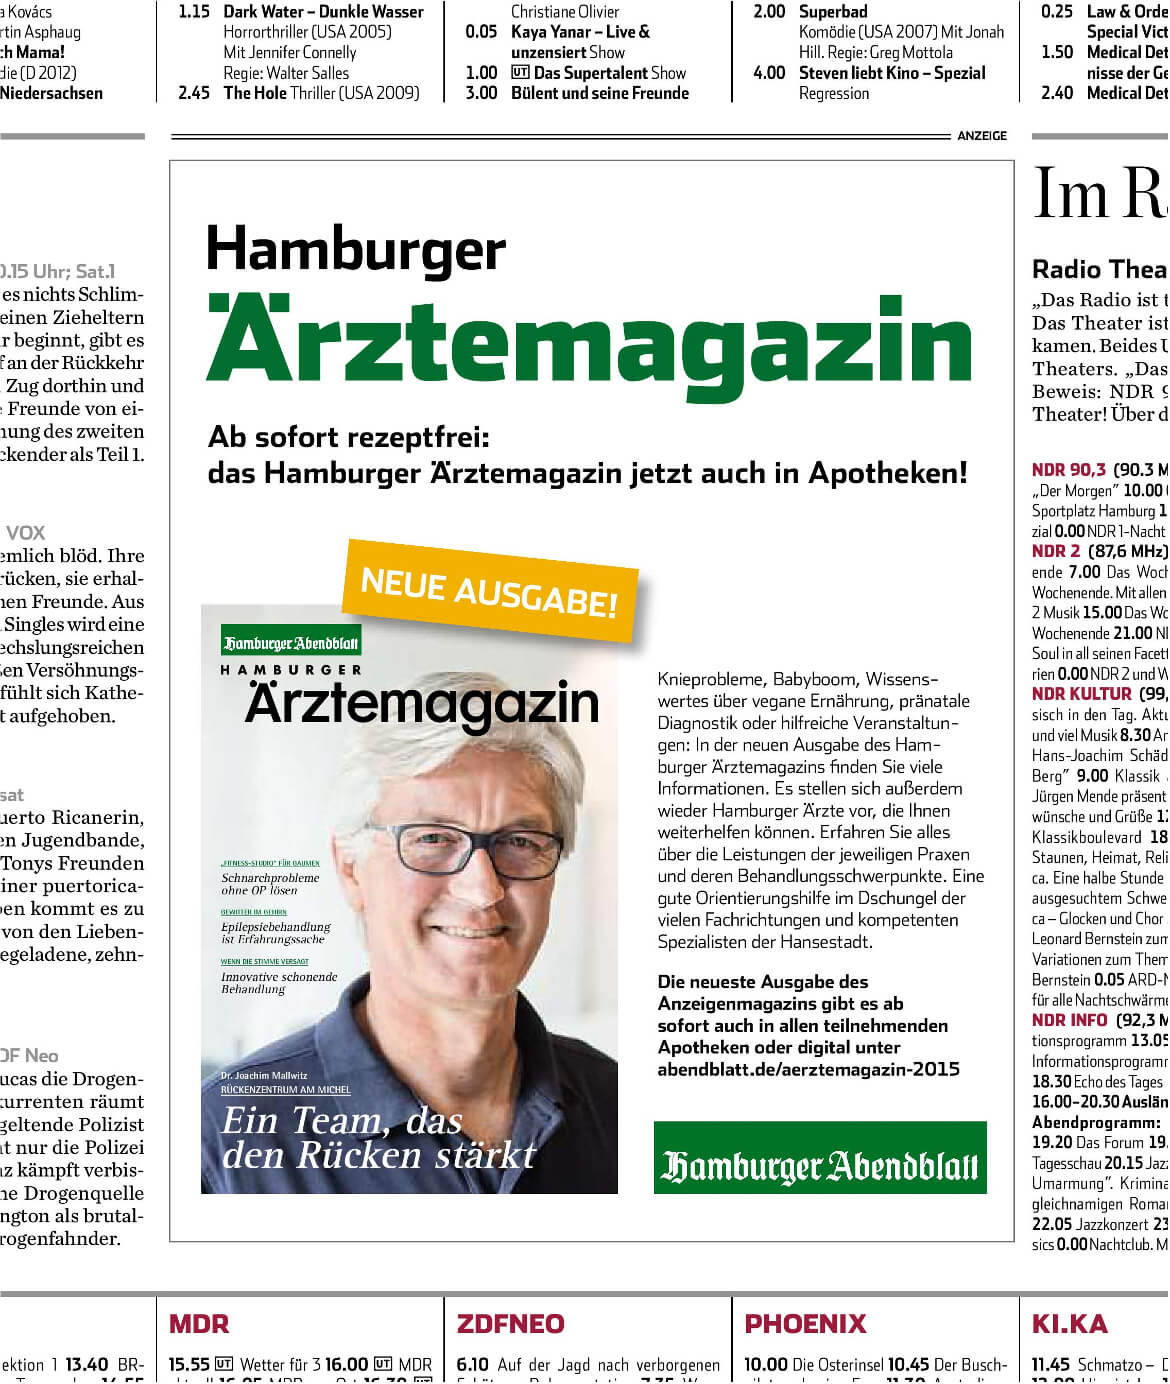 Anzeige vom Hamburger Ärztemagazin im Abendblatt am 10.10.